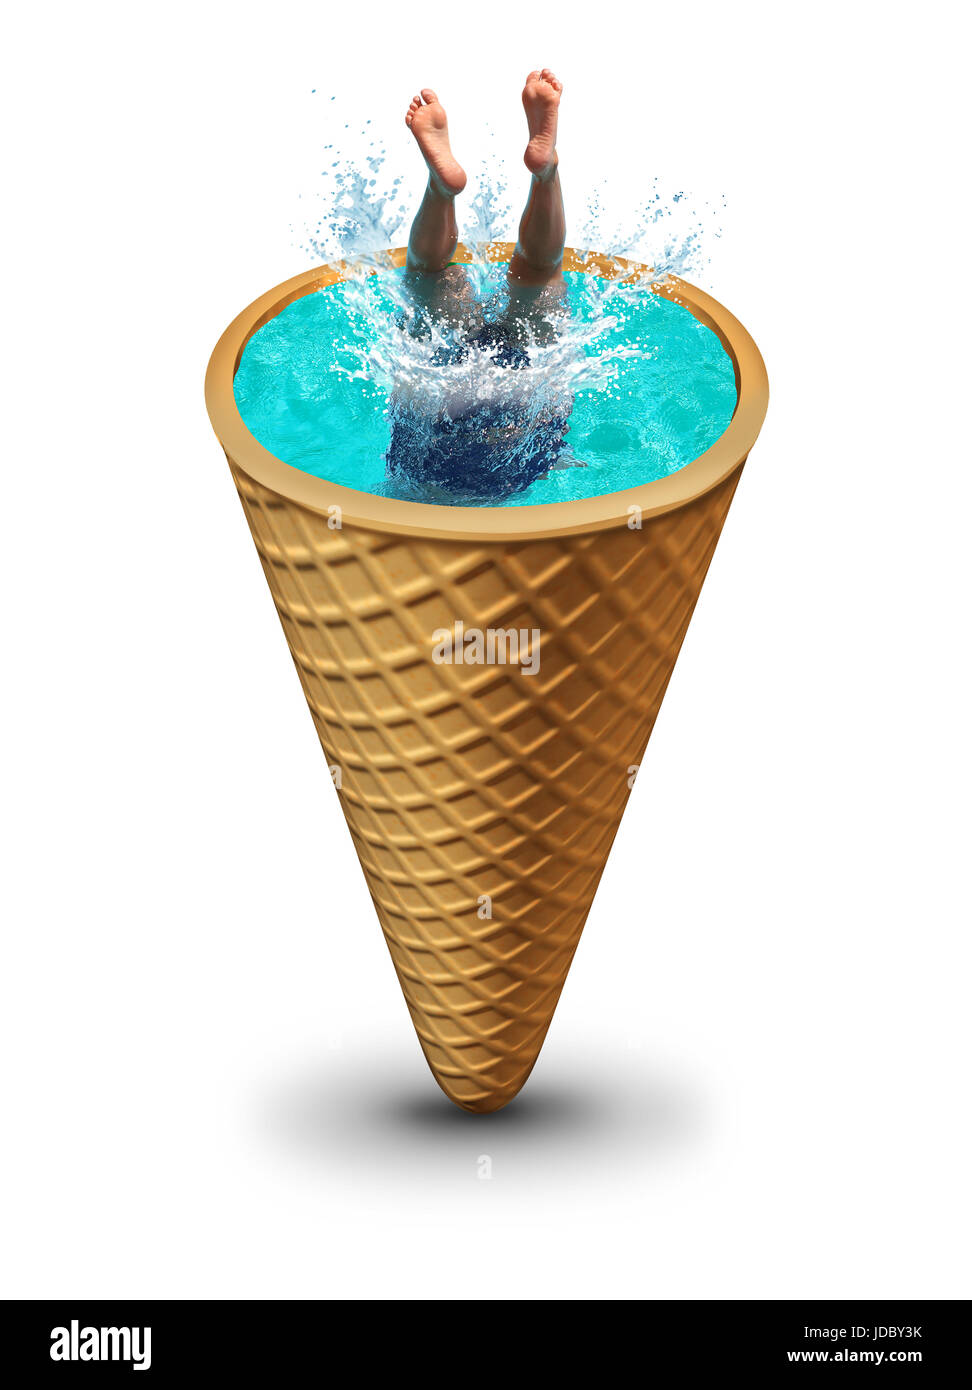 Piscina estiva divertente come una persona le immersioni in acqua rinfrescante rendendo uno splash all'interno di un cono gelato come un simbolo surrealista per la stagione calda. Foto Stock